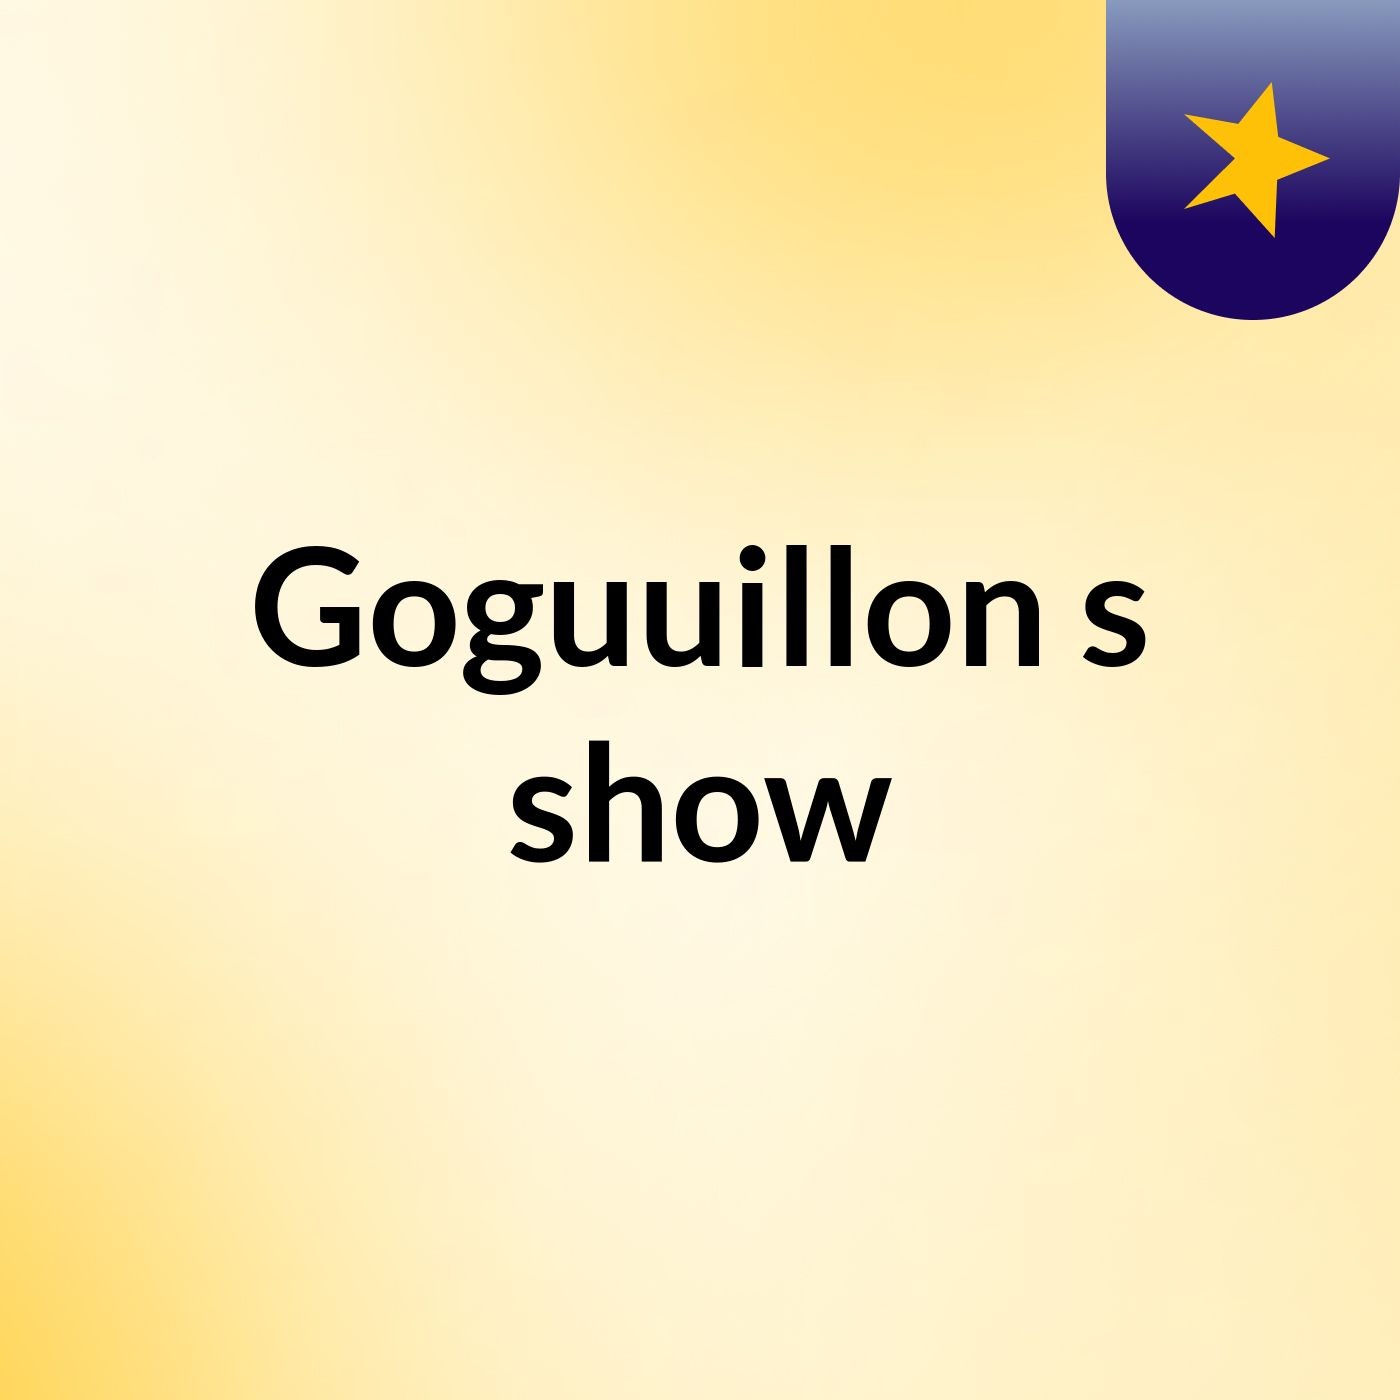 Goguuillon's show